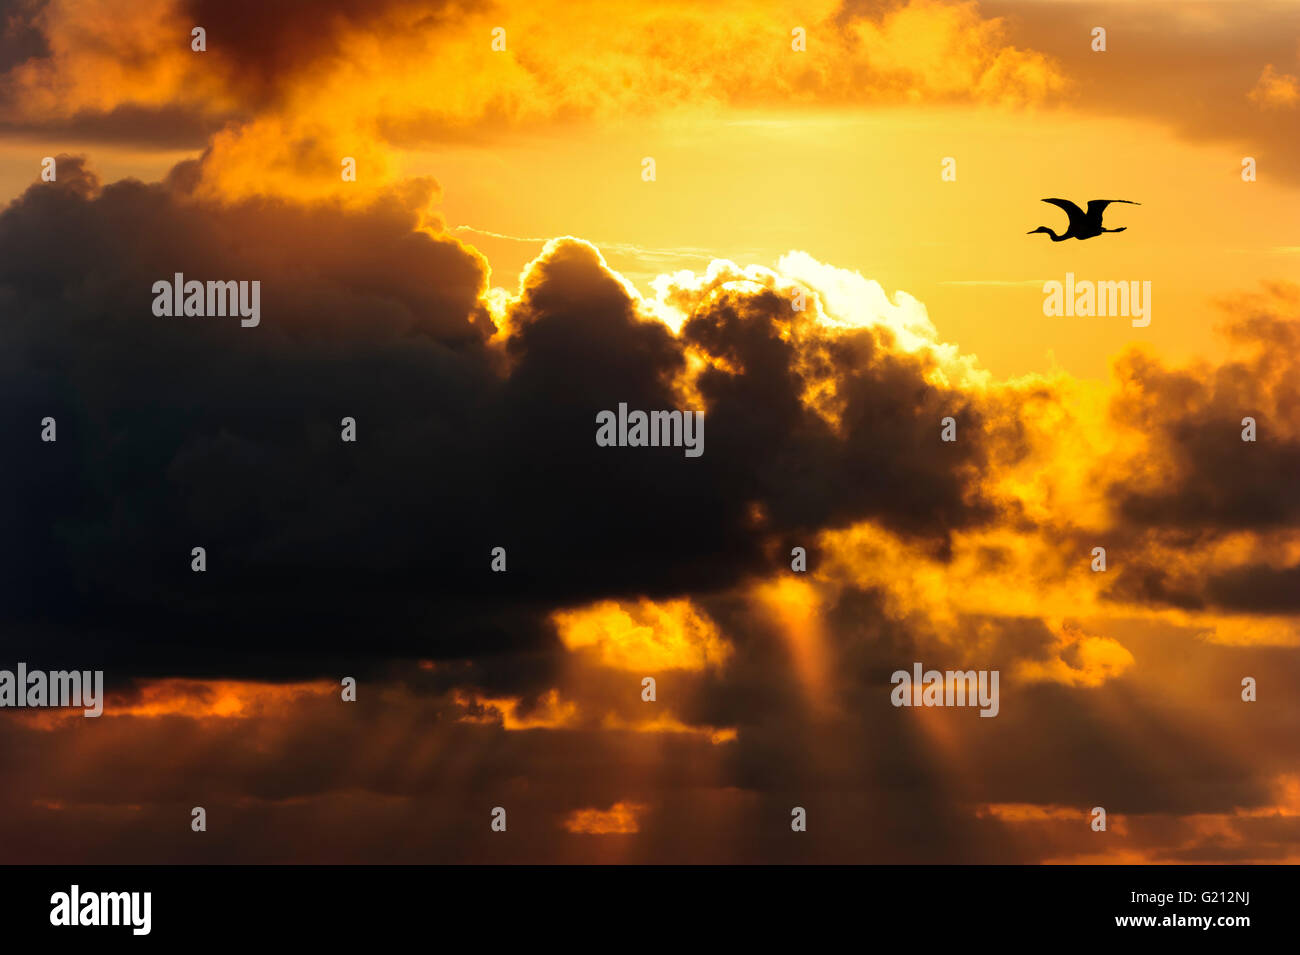 Dunkle Wolken Himmel ist eine dramatische dunkle launisch Wolkengebilde mit Vogel Silhouette gegen einen hellen sonnigen Himmel. Stockfoto